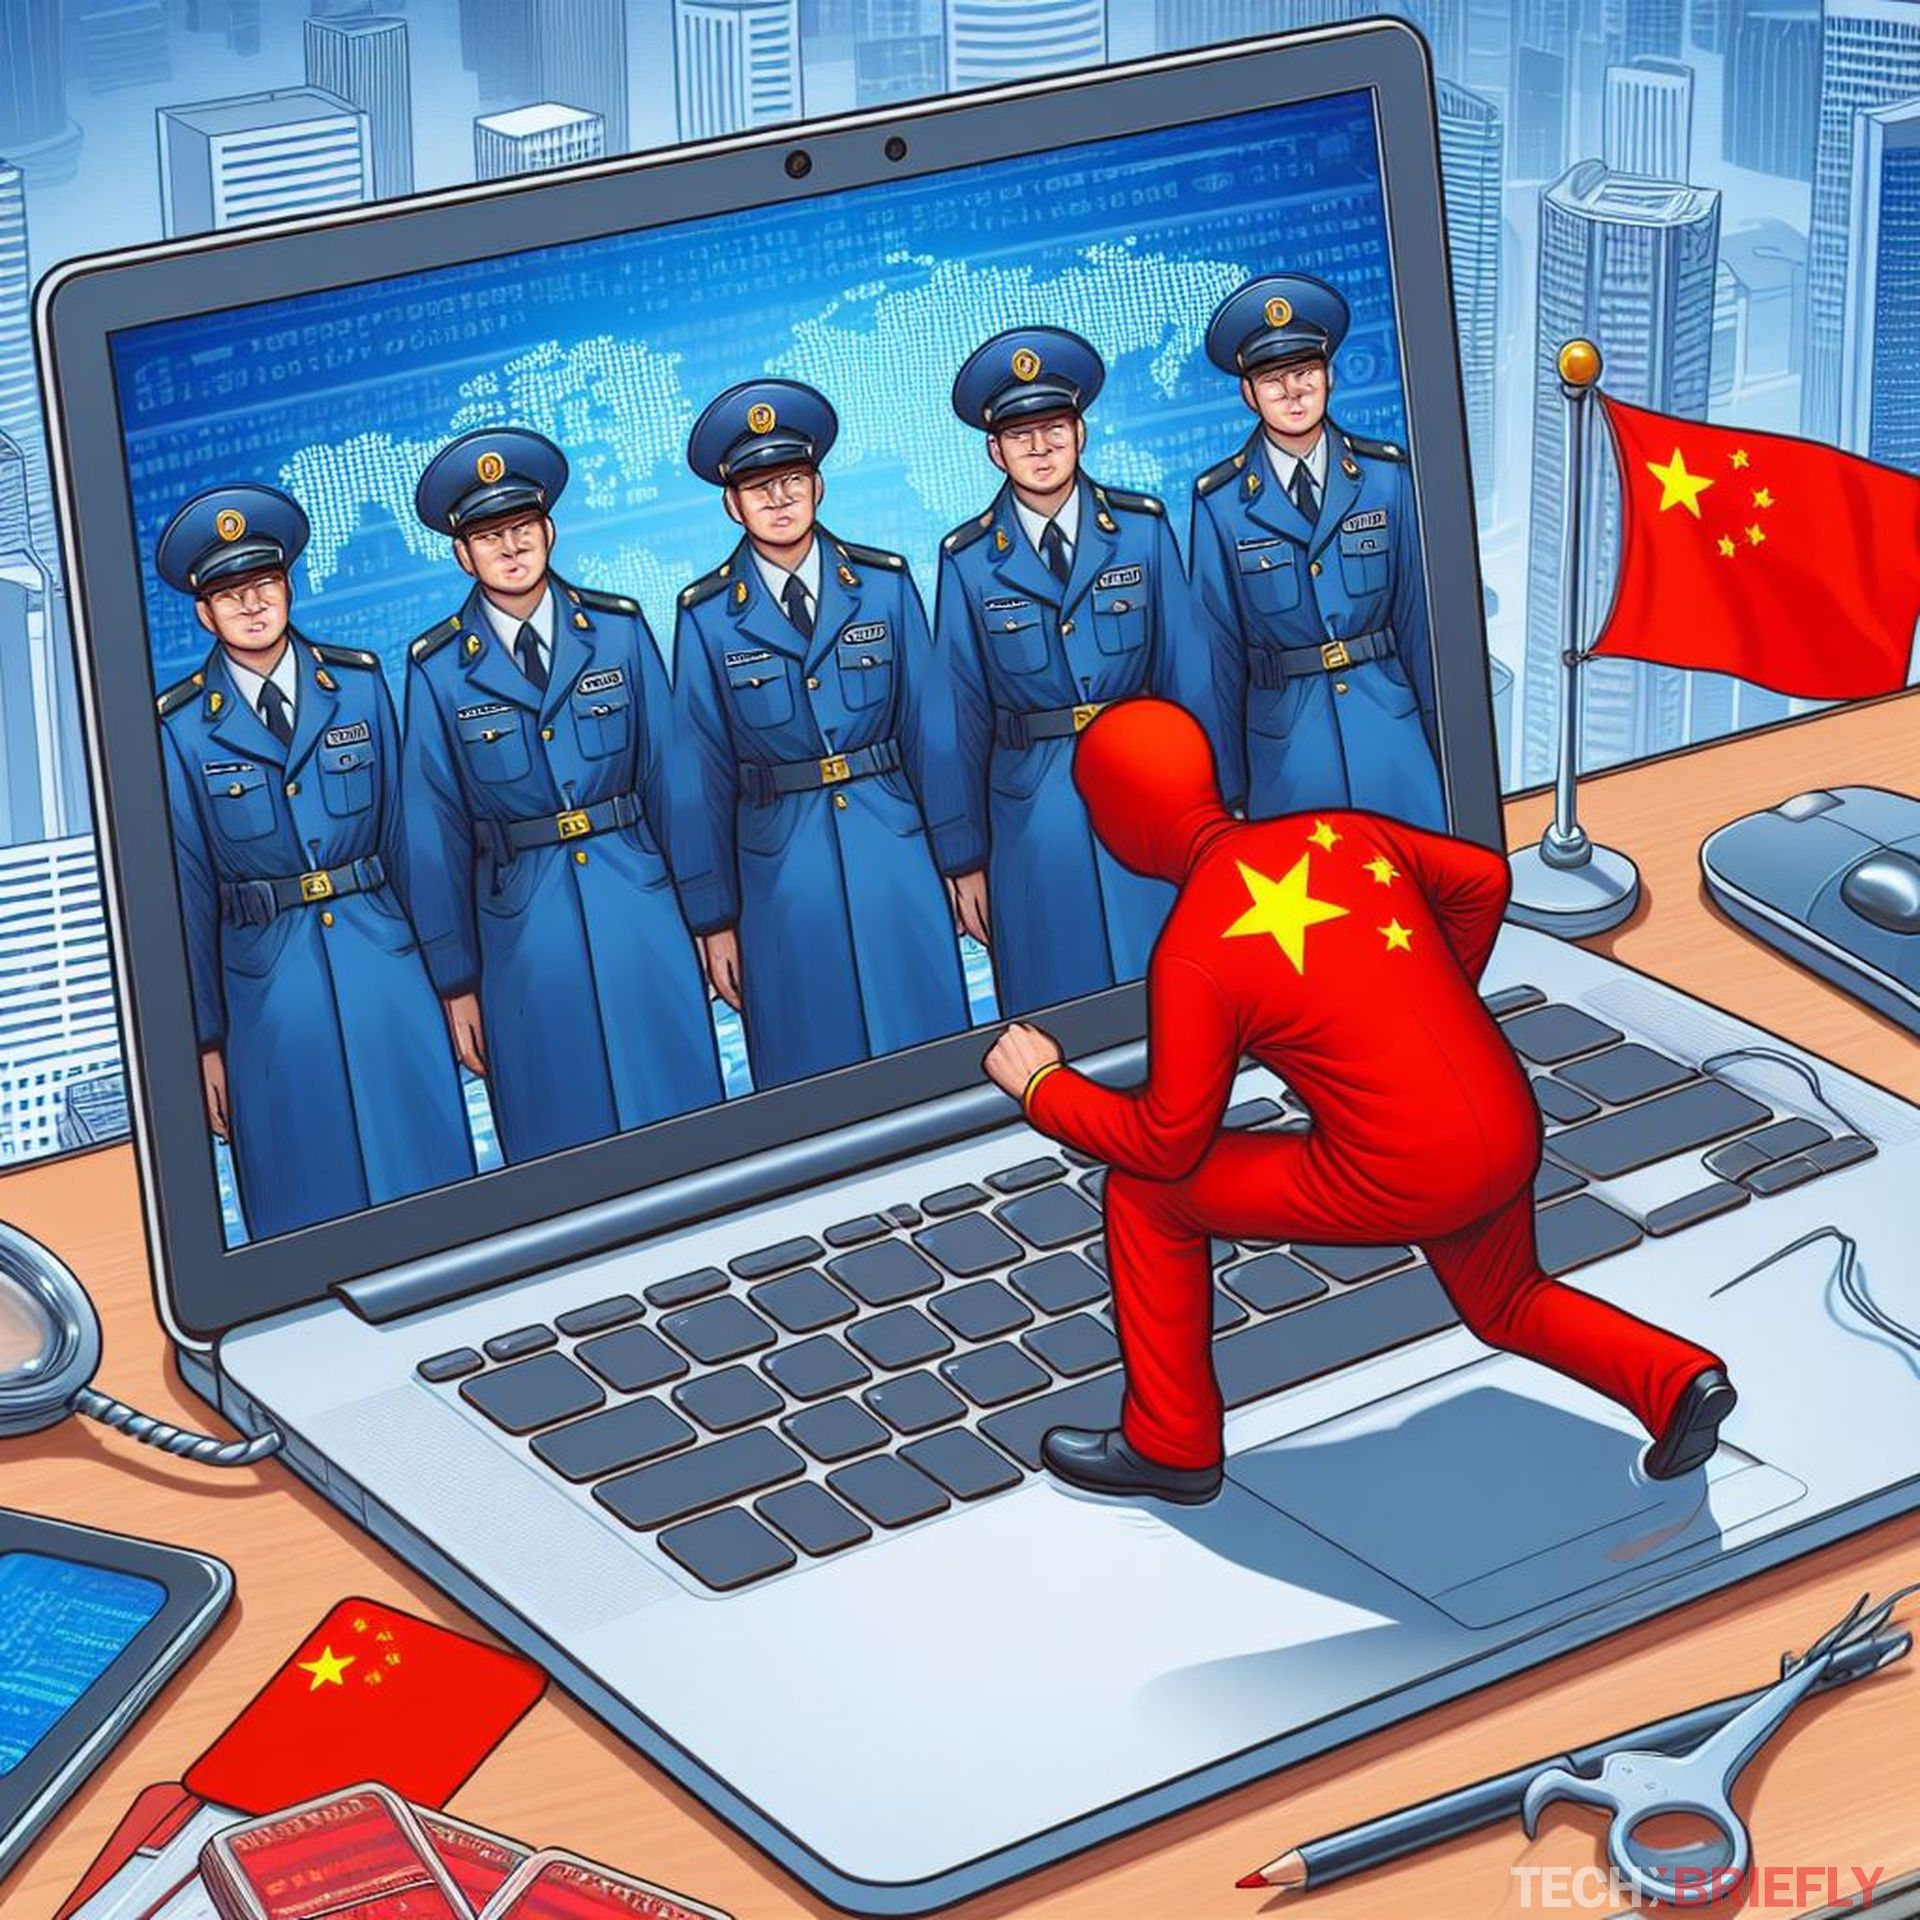 Китайские интернет-шпионы охотятся за цифровыми замками, чтобы украсть важные данные